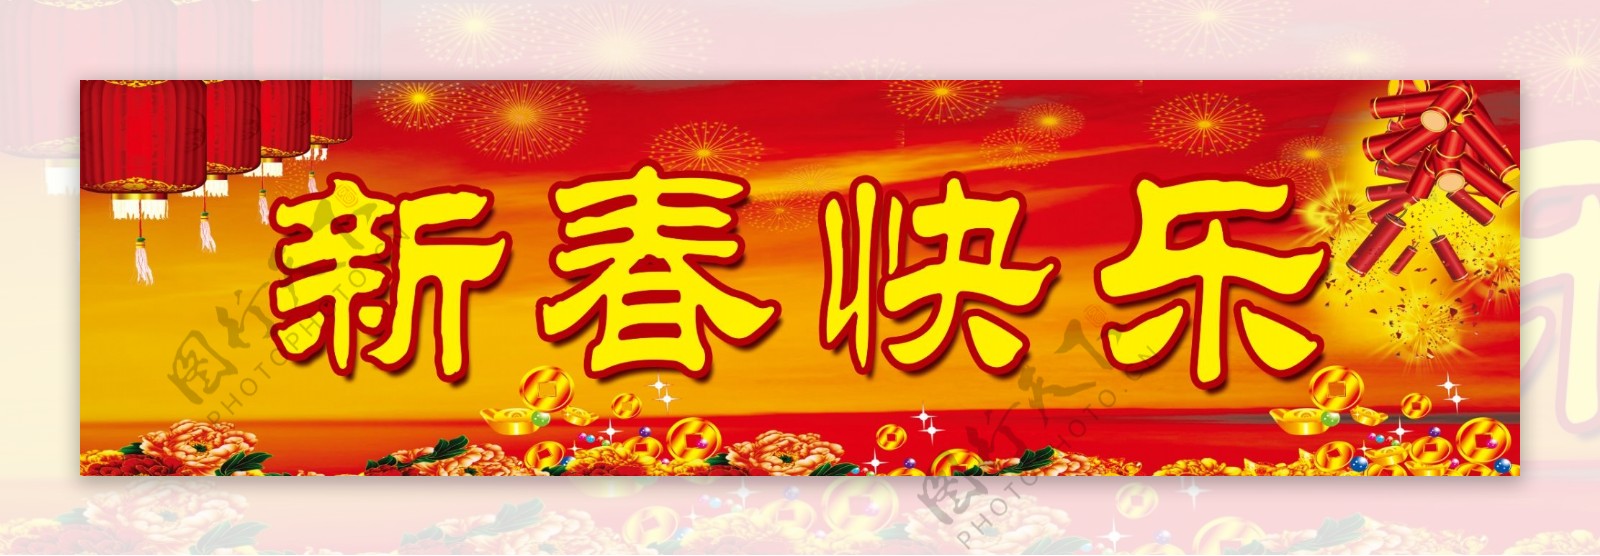 新春快乐展板背景图片